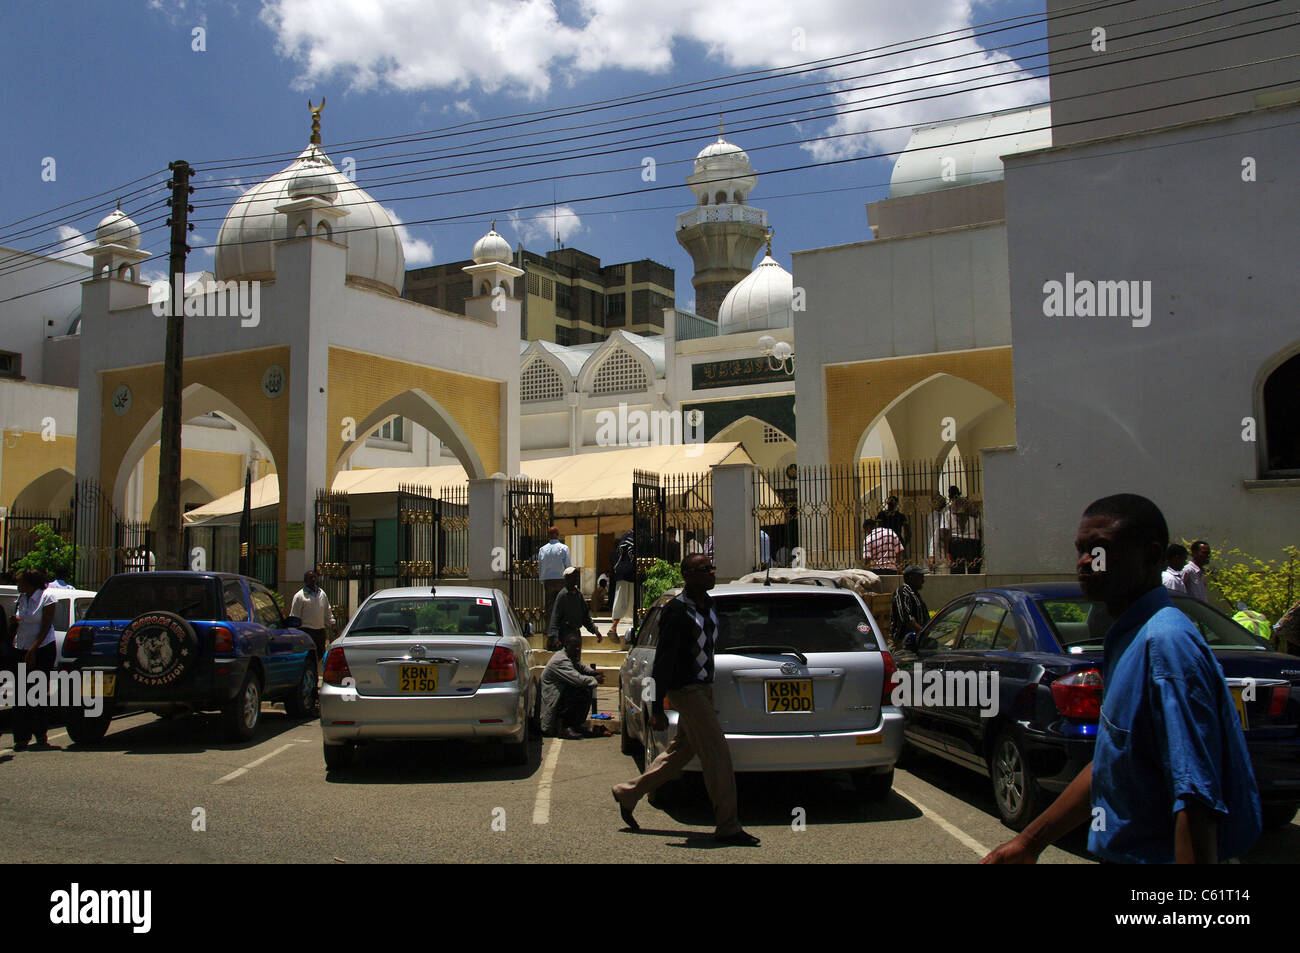 Jamia mosquée dans le quartier central des affaires de Nairobi, Kenya Banque D'Images